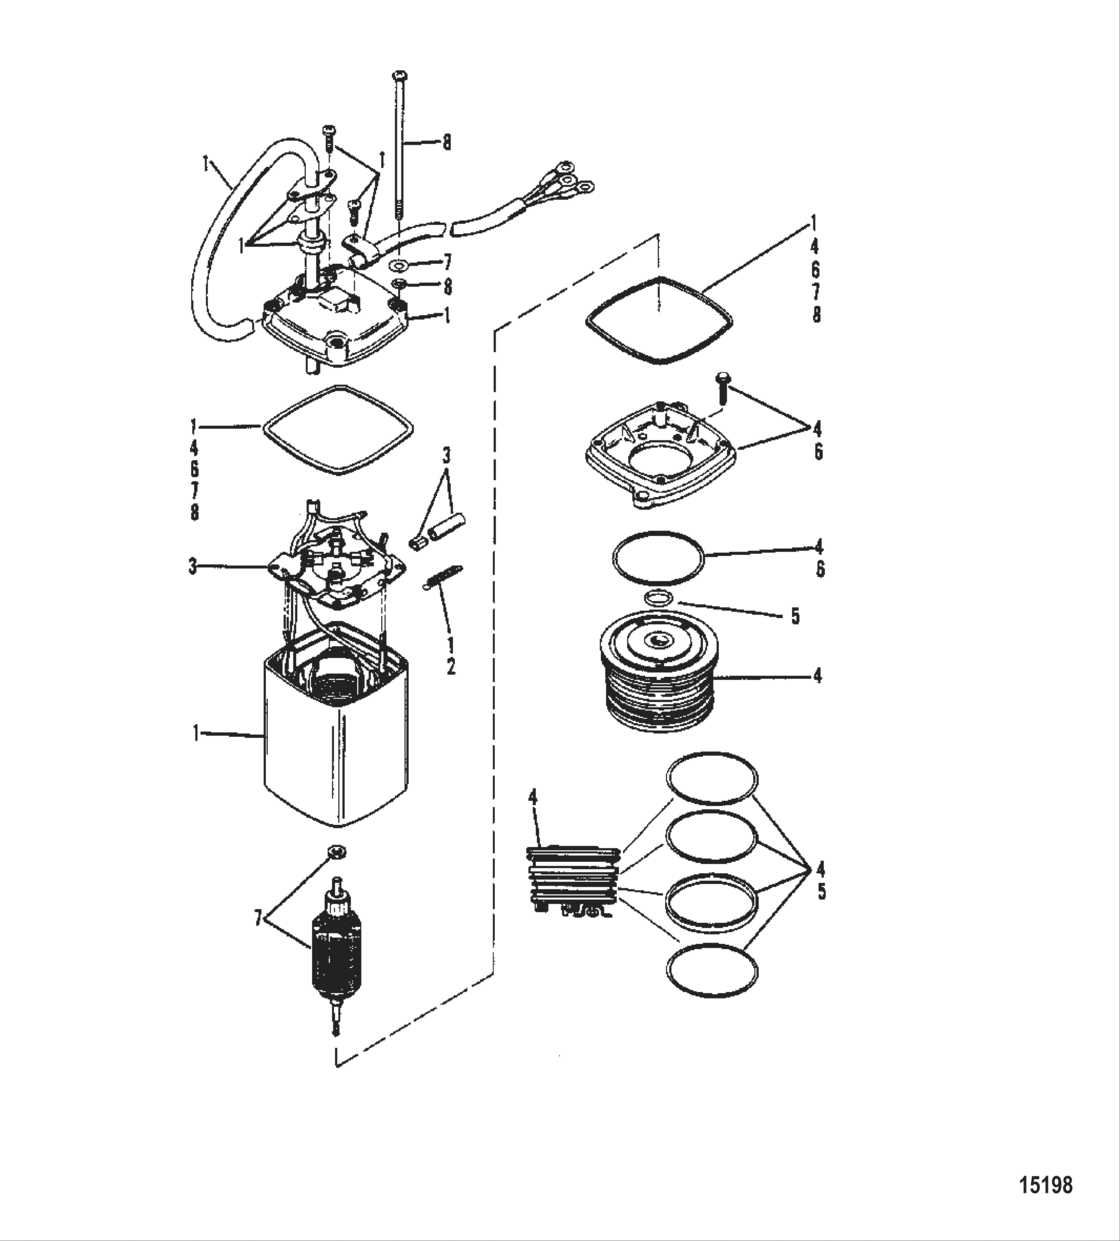 Power Trim Pump (Eaton Rectangular Motor-0C159199 And Below)